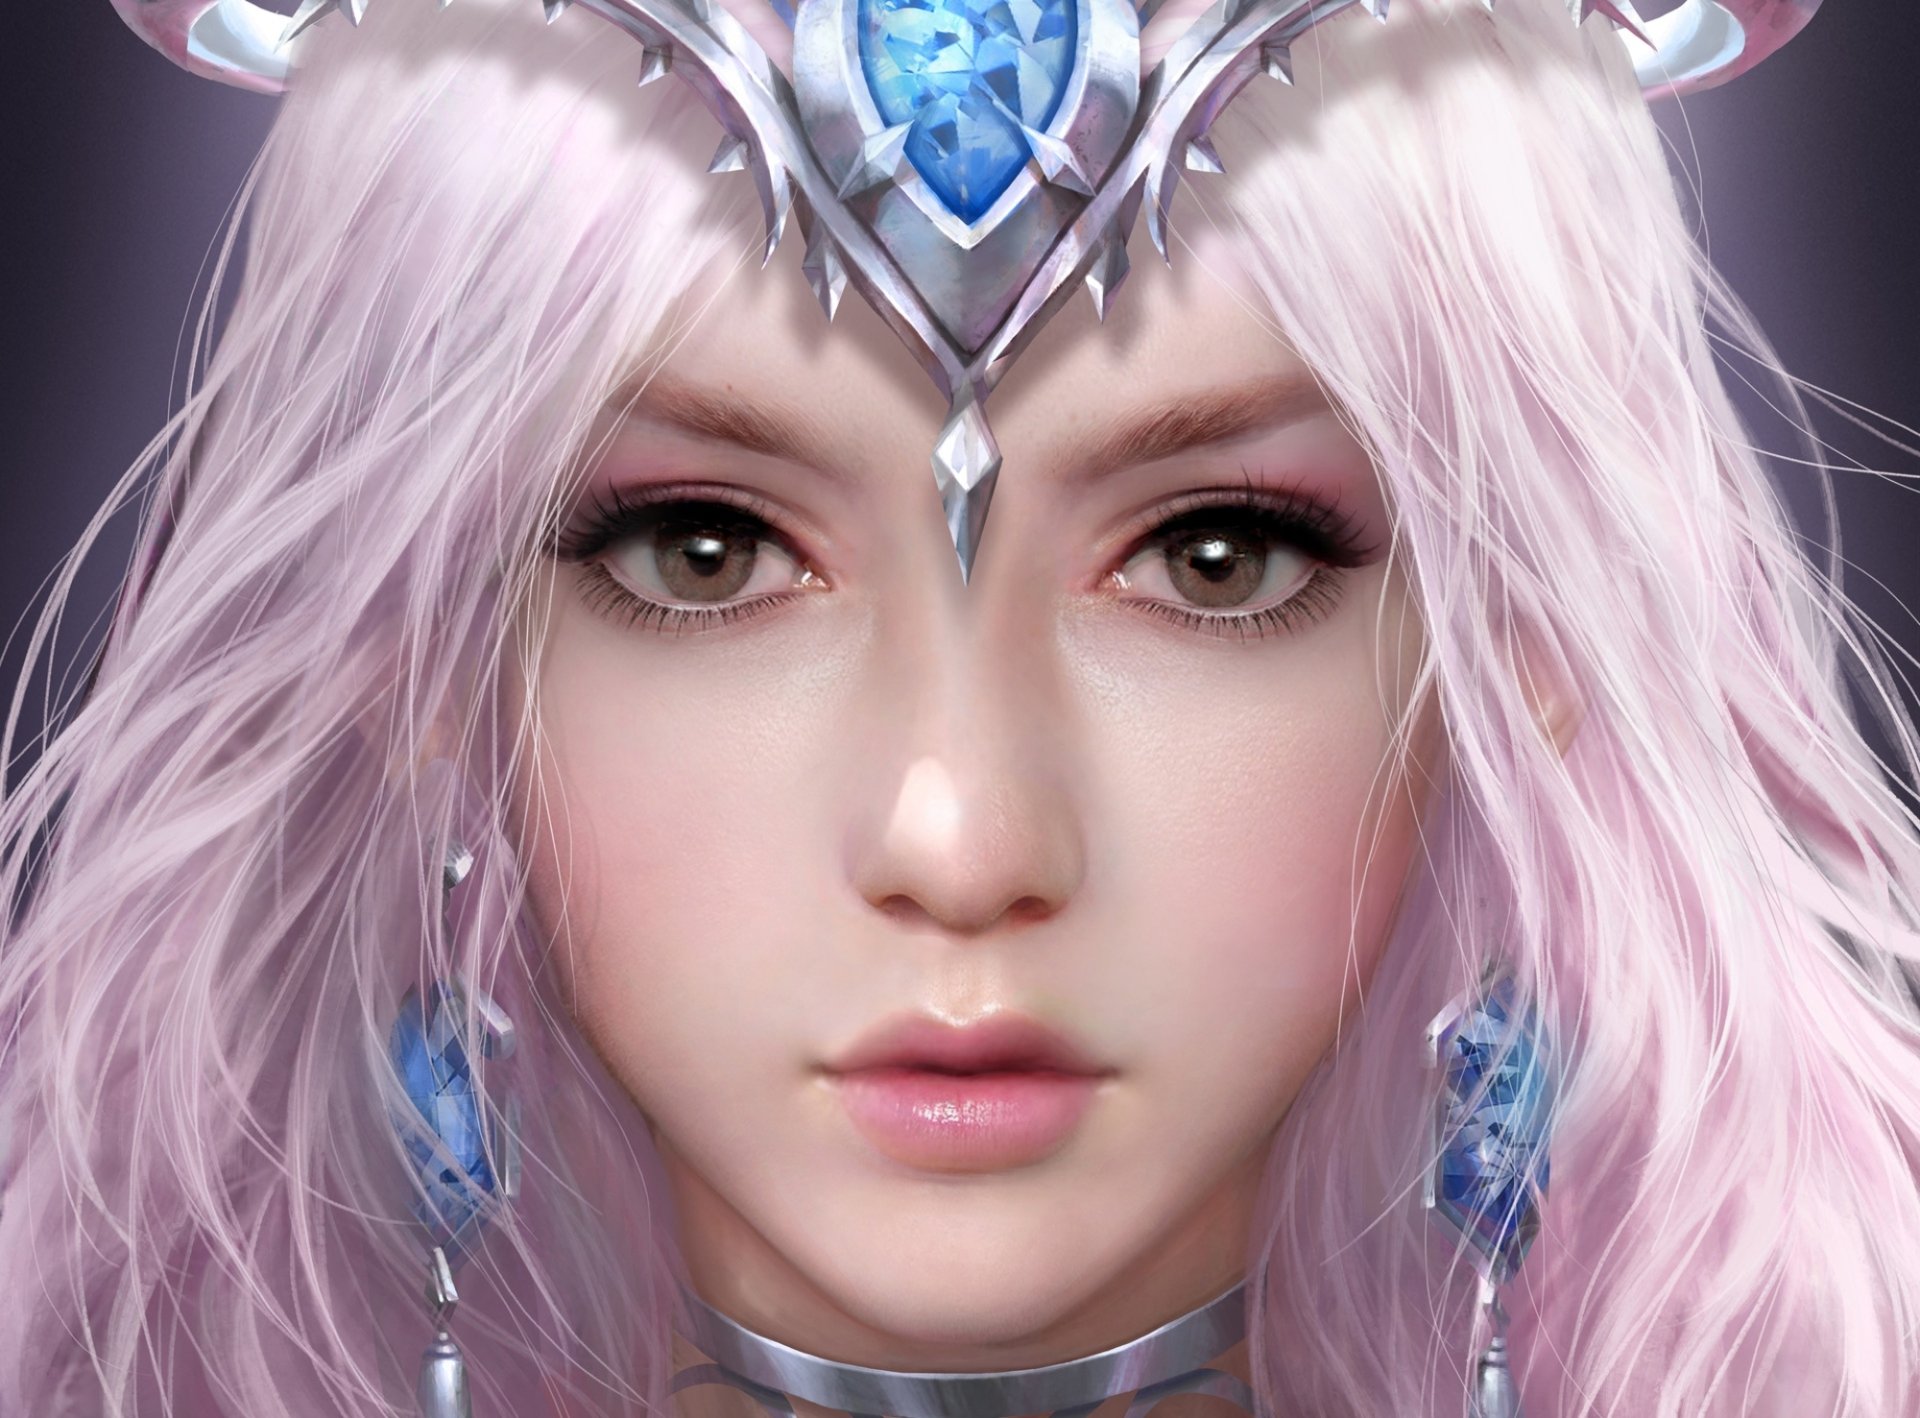 Download Face Fantasy Woman HD Wallpaper by xiangxiang lu